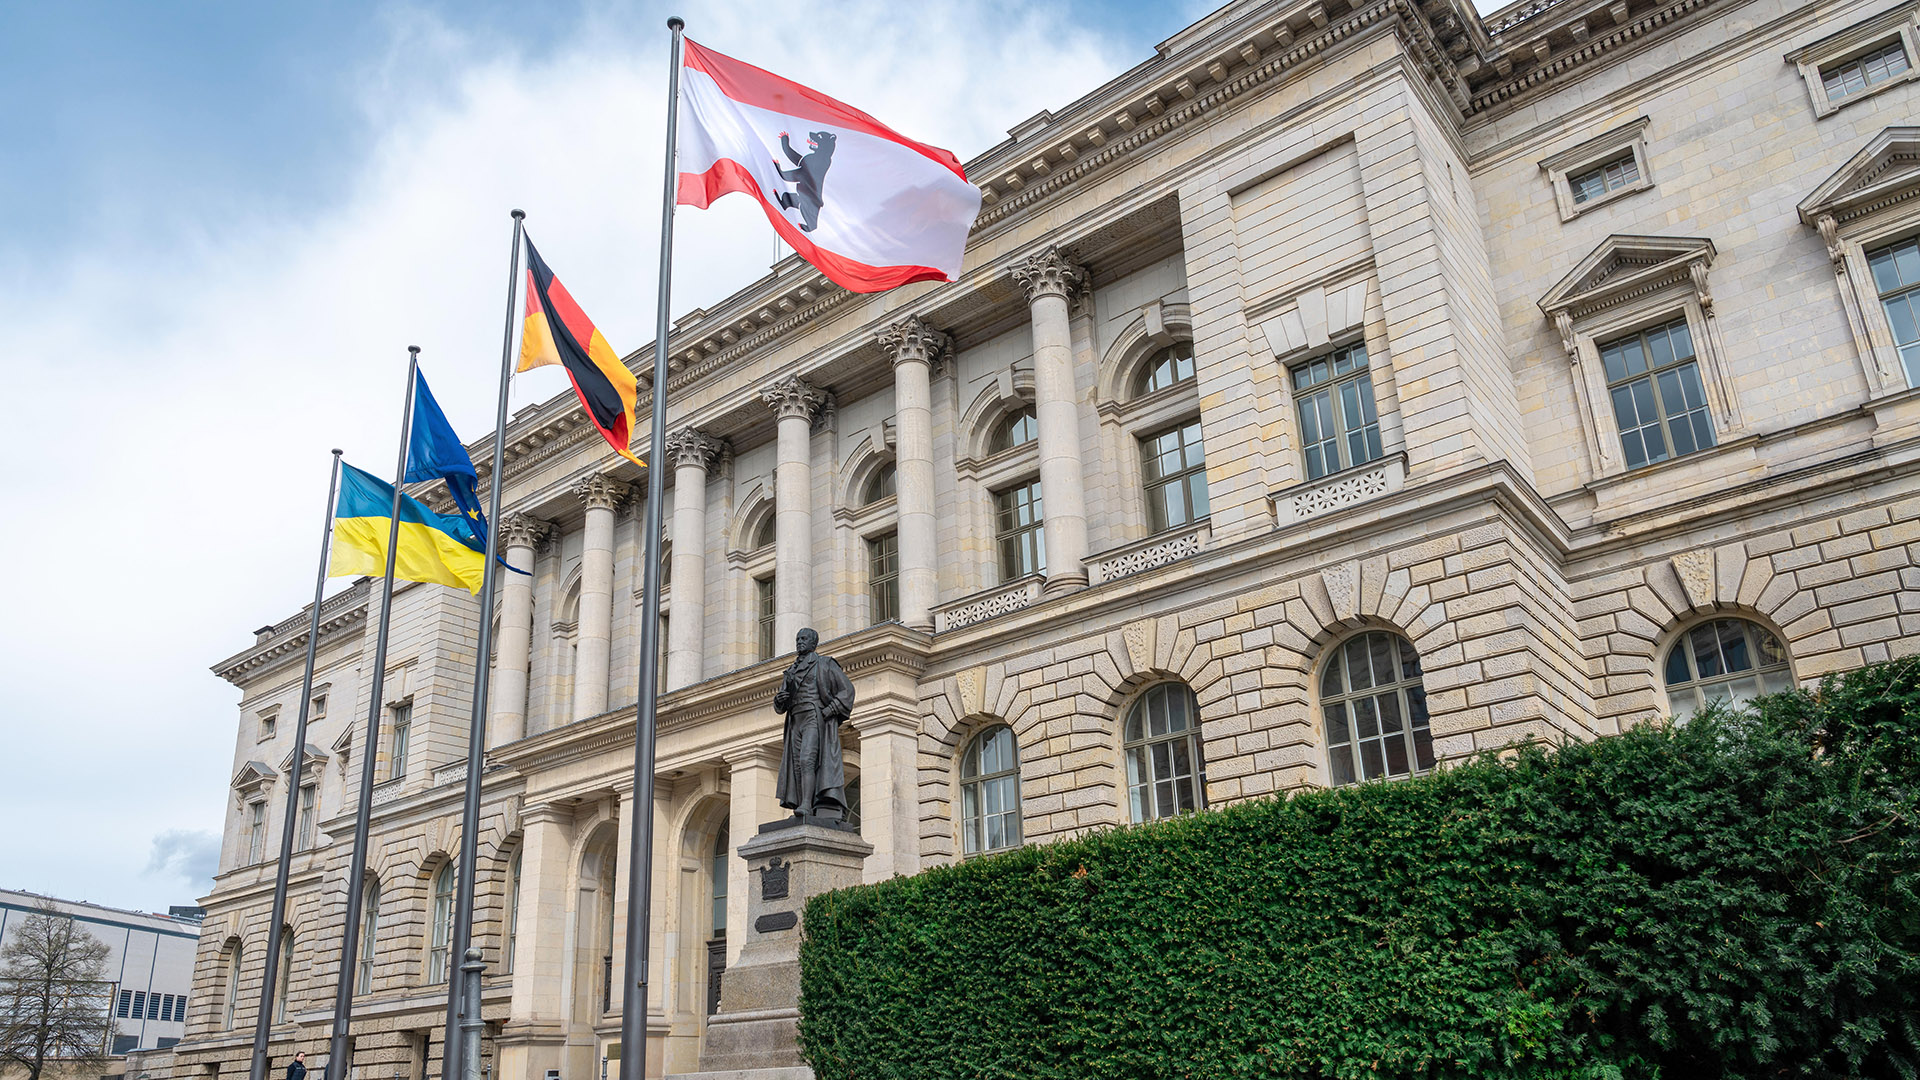 Archivbild: Das Abgeordnetenhaus ist das Landesparlament von Berlin und deren oberstes Verfassungsorgan. (Quelle: dpa/Kalker)